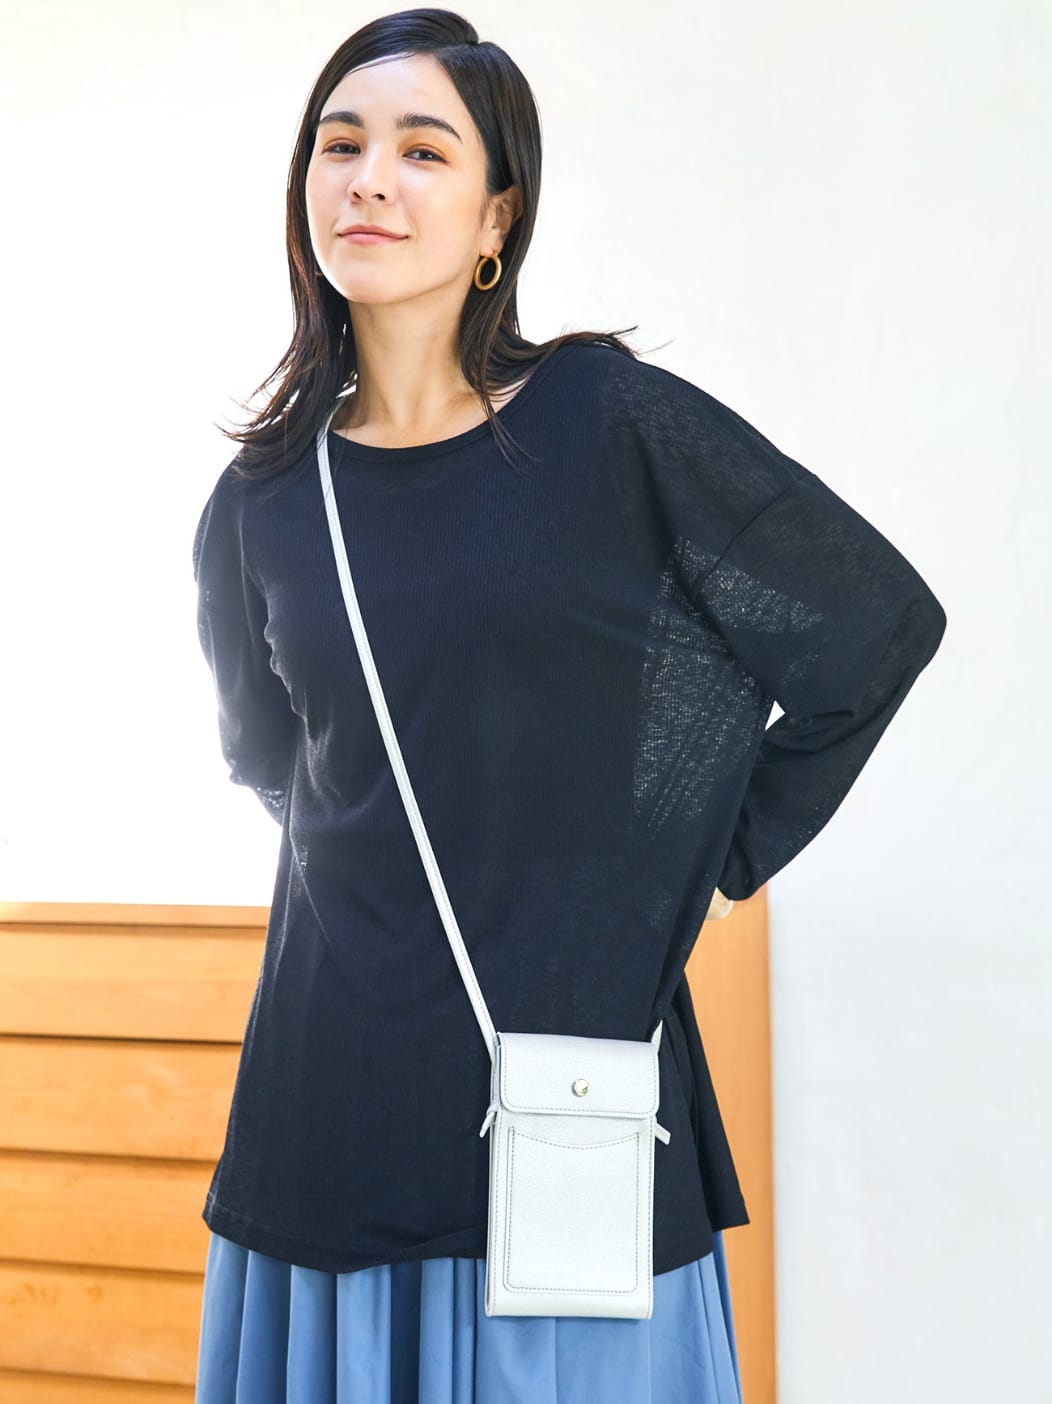 2層ソフト スマホショルダーバッグ銀を着用している女性モデル画像